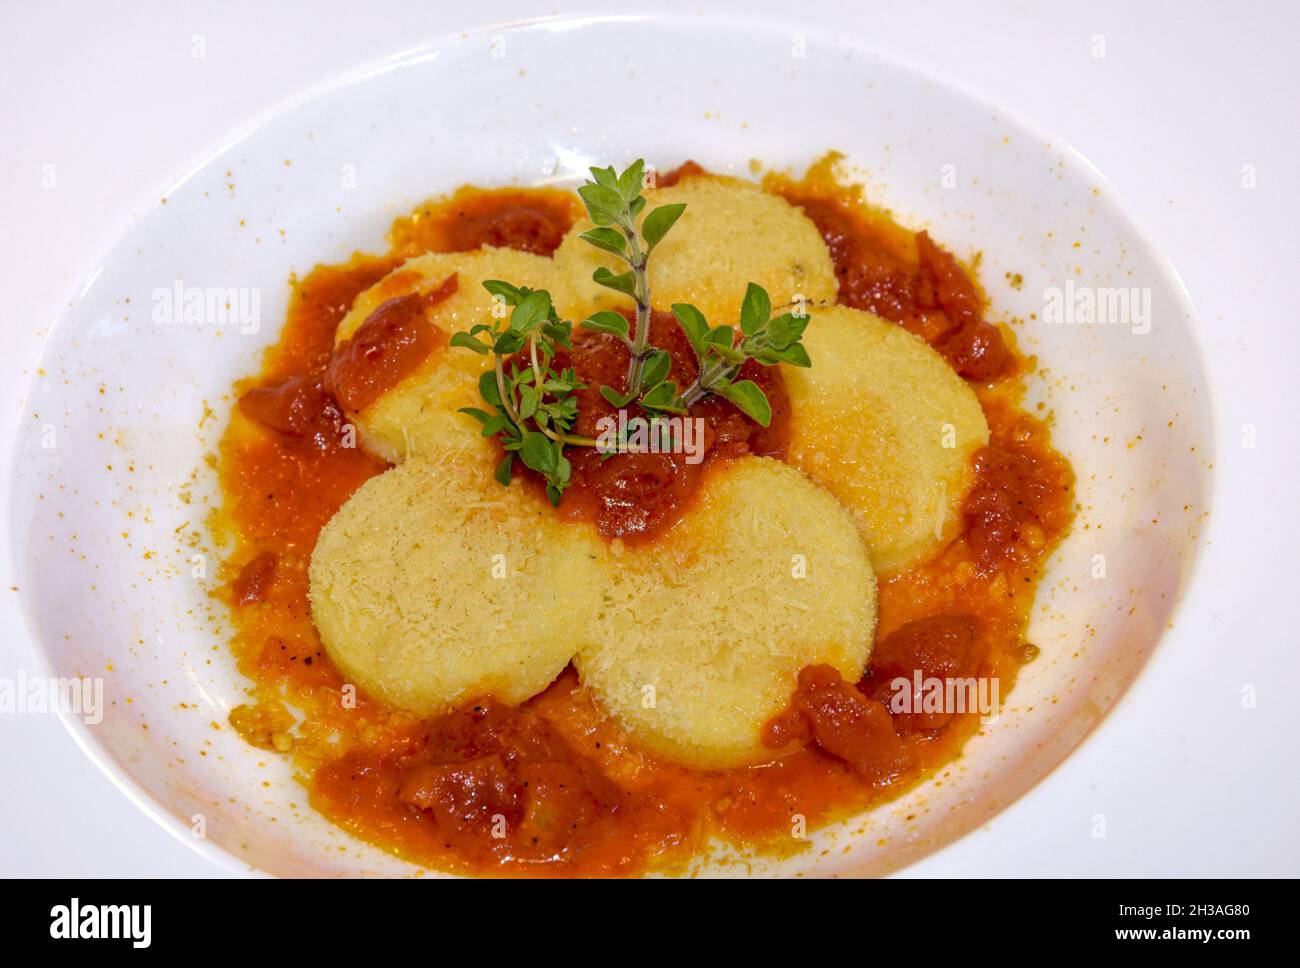 Gnocchi alla Romana avec sauce tomate et fromage , boulettes italiennes typiques de Rome faites avec de la semoule Banque D'Images